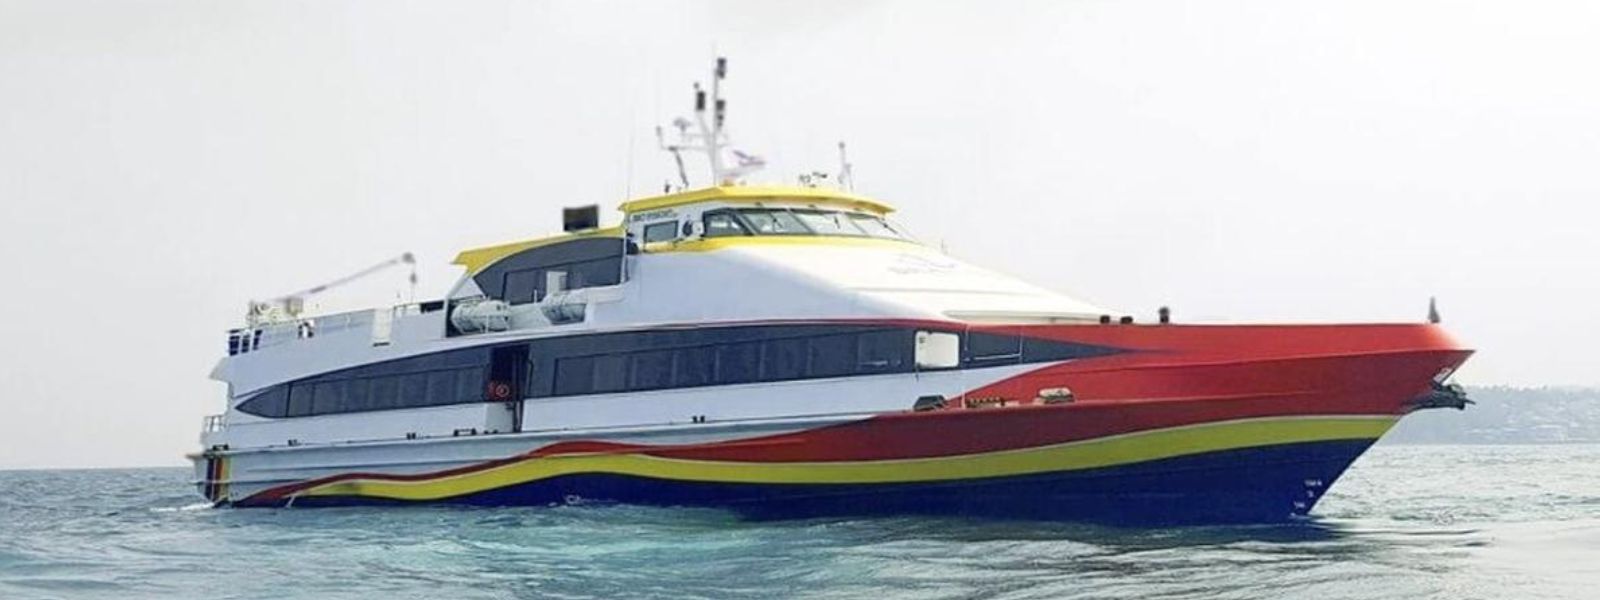 Nagapattinam-Kankesanthurai ferry to resume